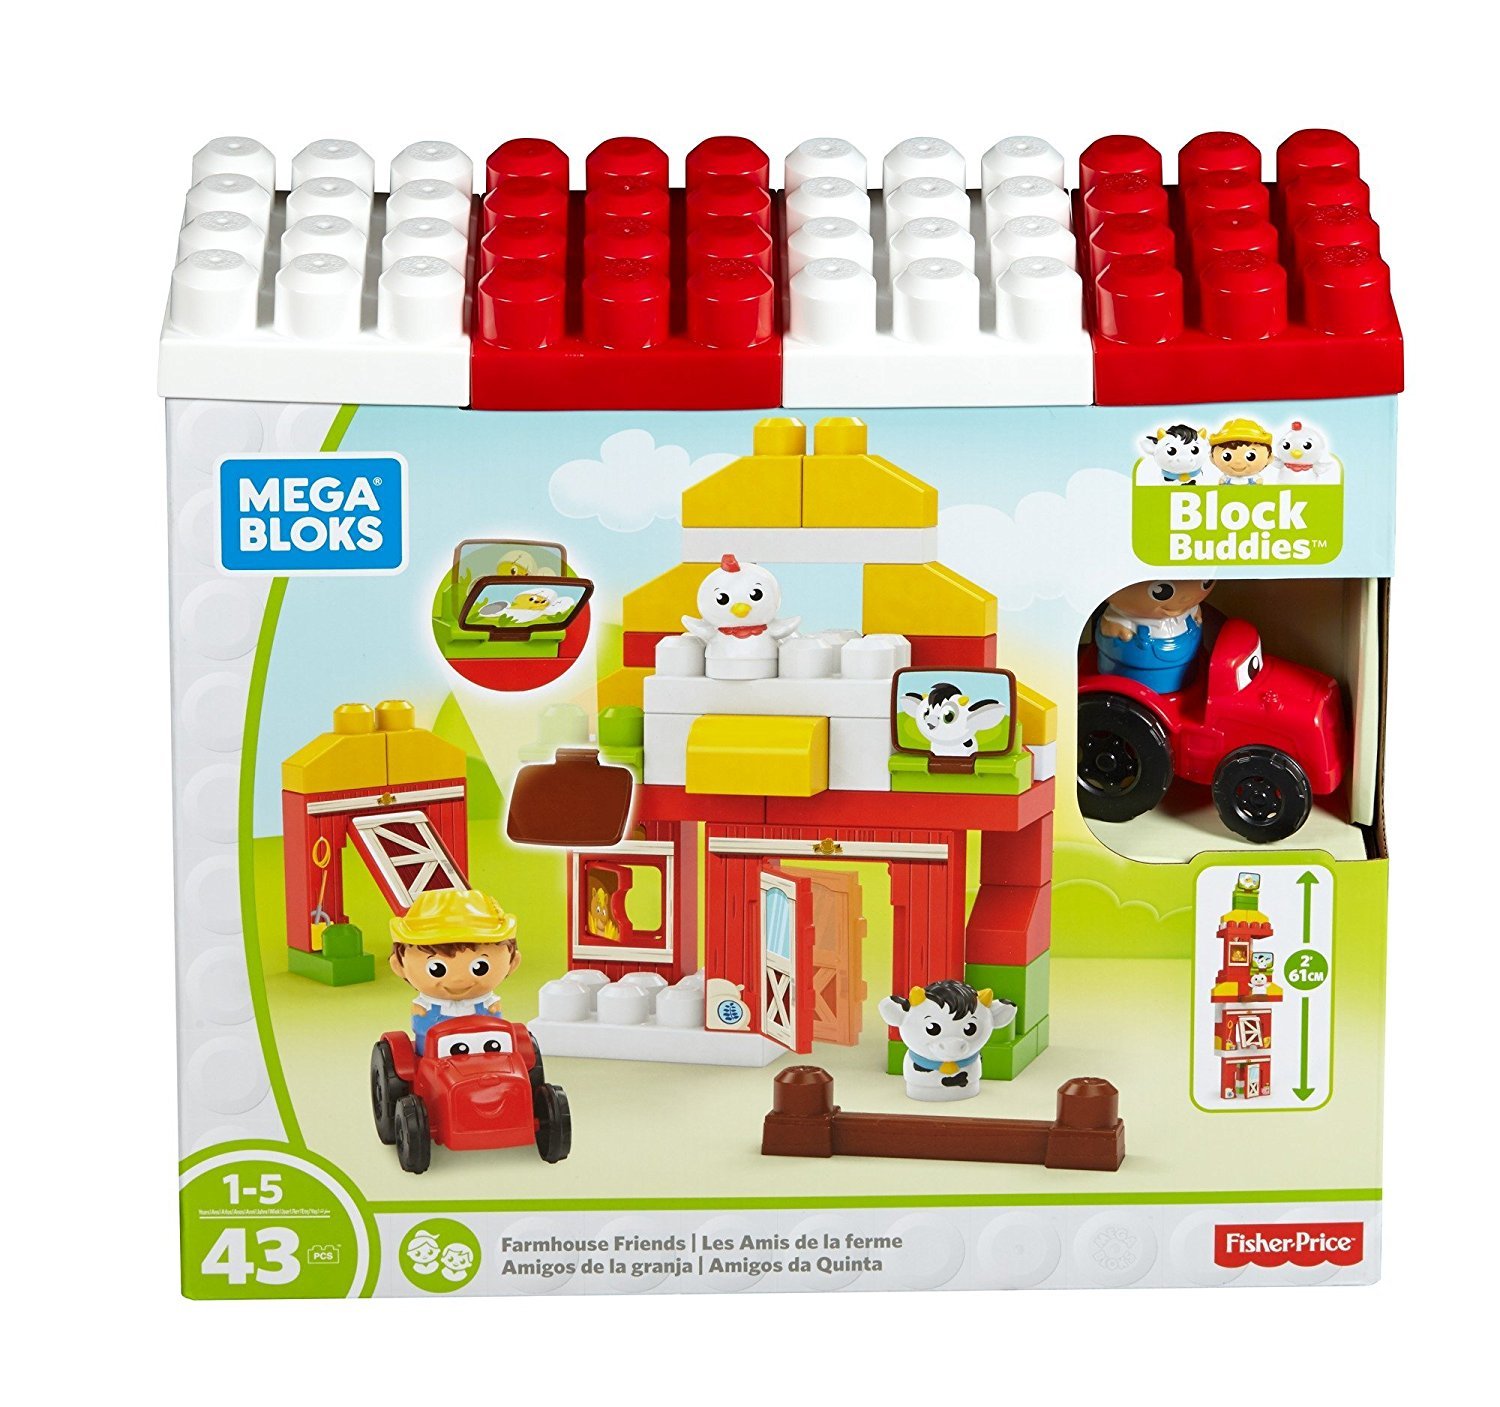 Mega Bloks Dpj57 Farm Friends Mattel, Building And Construction Toy